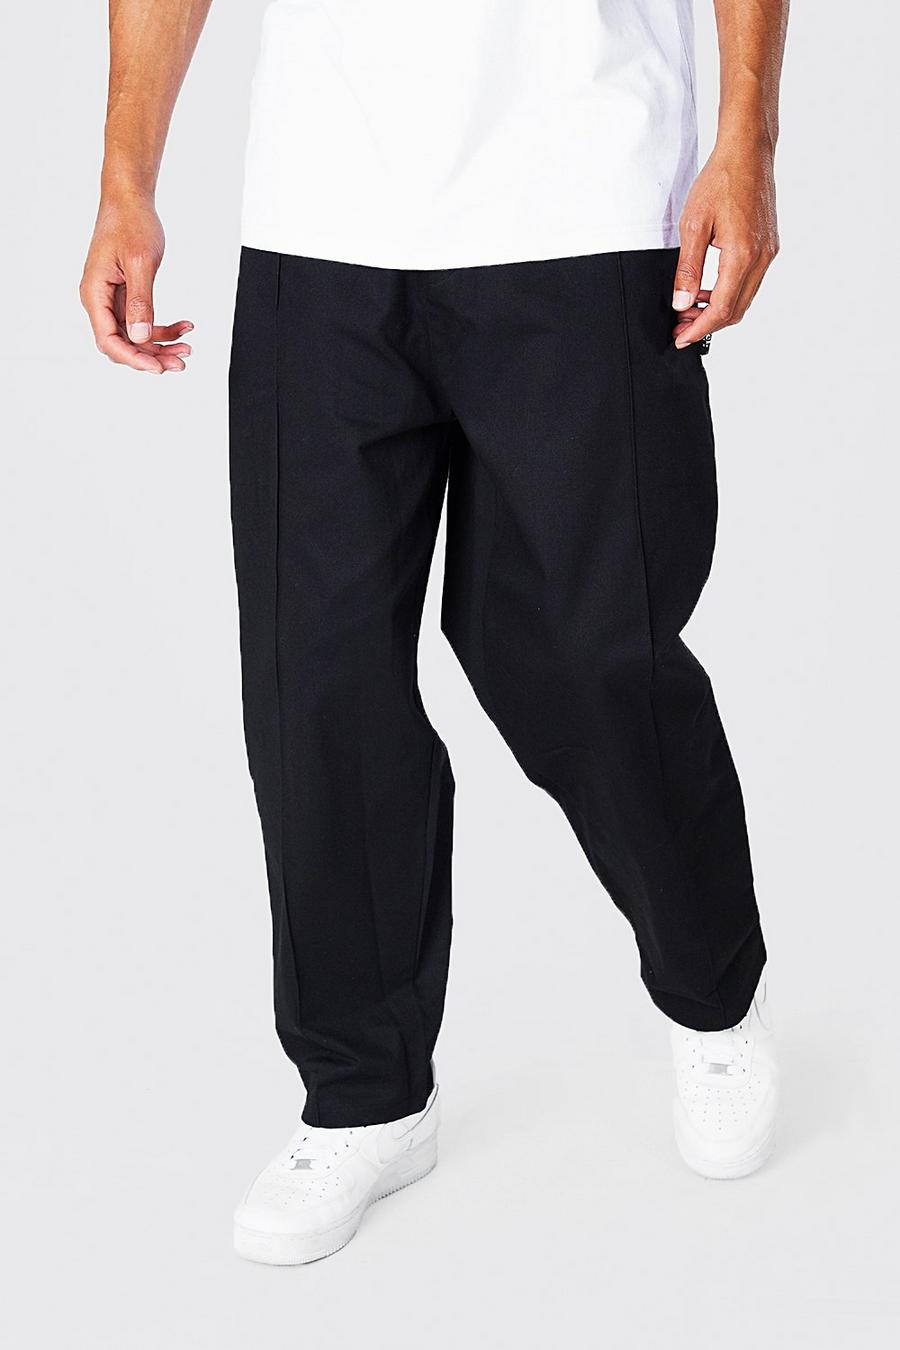 Pantalones chinos Tall estilo skater con cintura elástica, Black nero image number 1